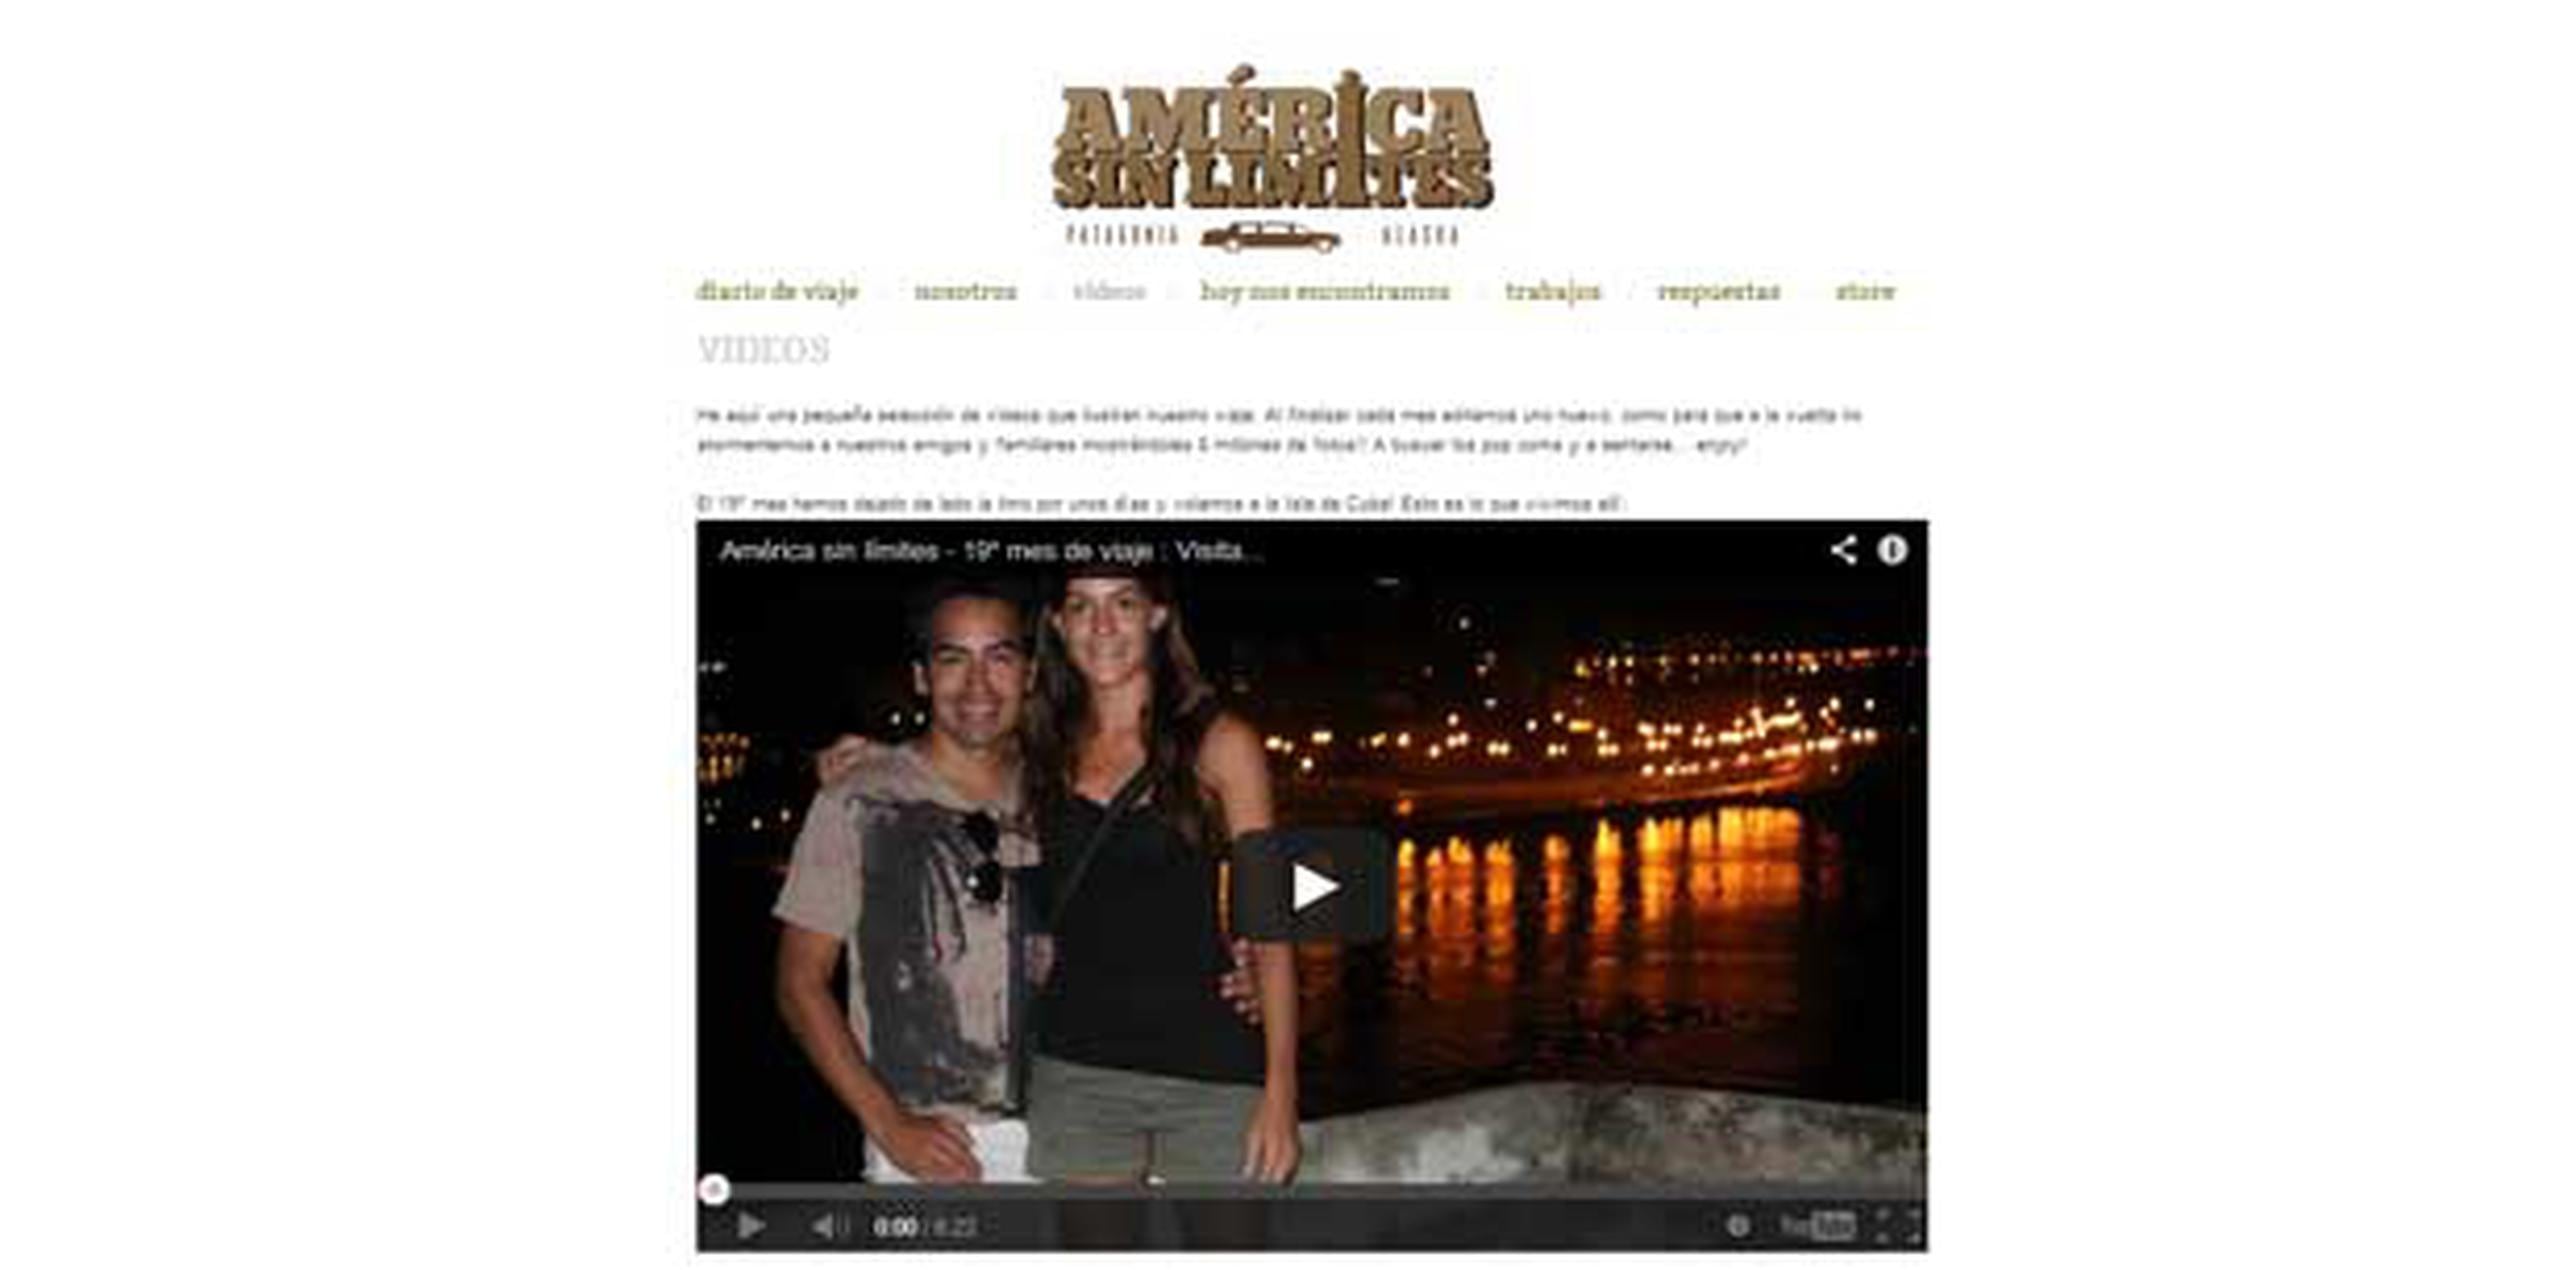 Lucas Cárdenas y Florencia Bratovich han documentado su travesía en la página de internet América sin límites. (http://www.americasinlimites.tv)